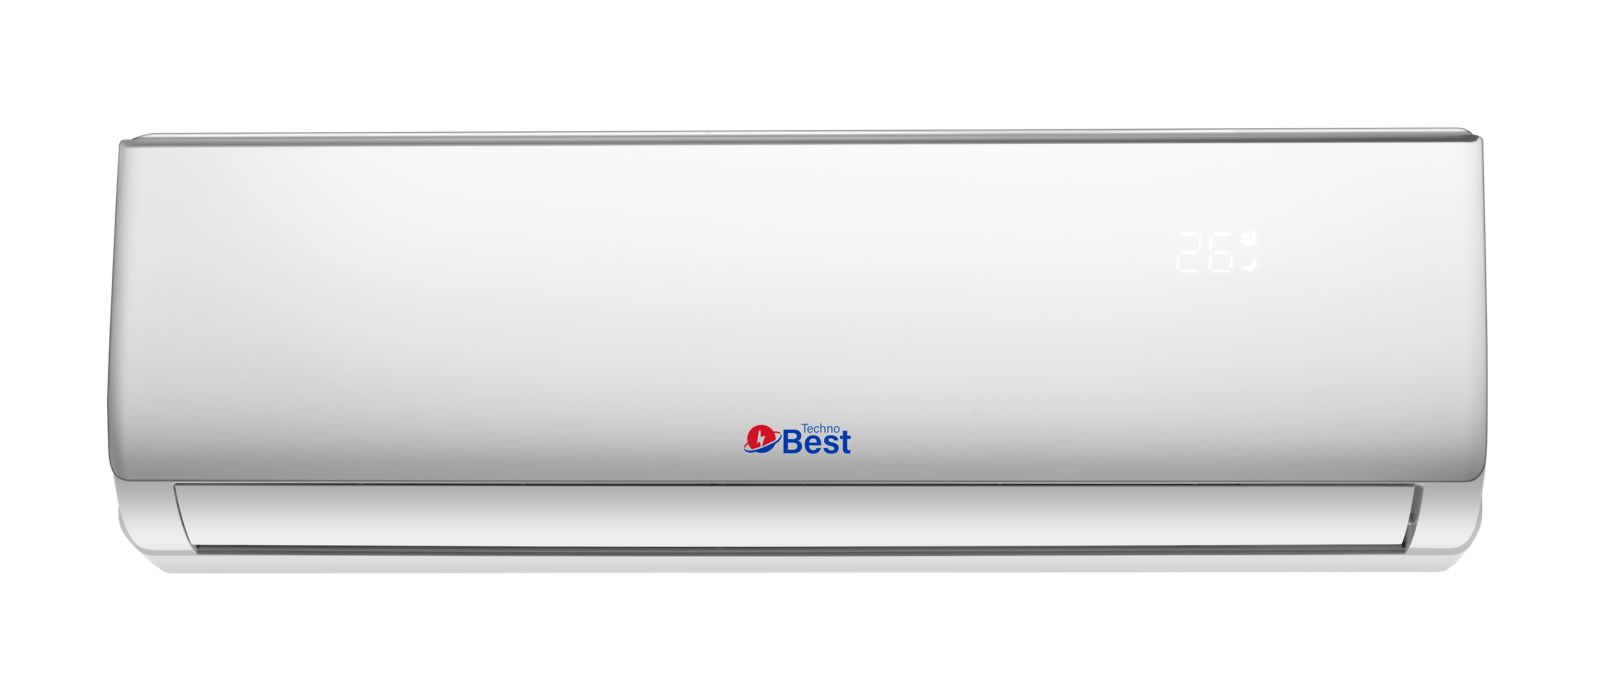 TECHNO BEST Split Air Conditioner, 12100 BTU, Cold Only, 4-Ways-Auto-Air, Quiet Sound - BSAC-012C